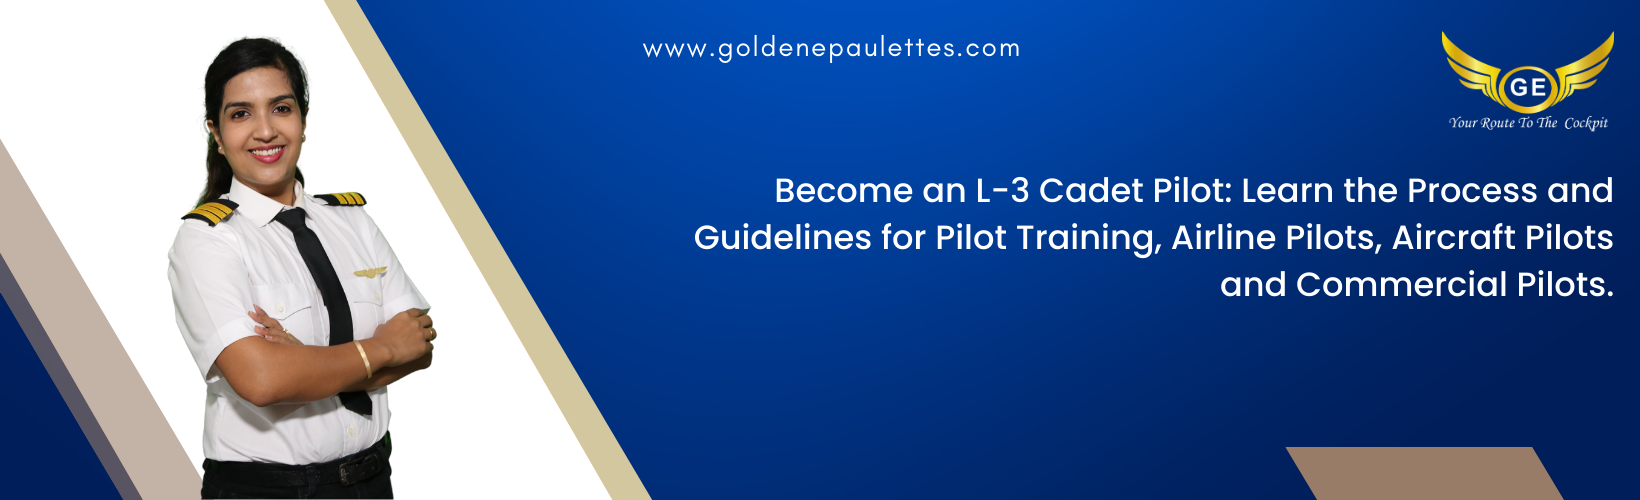 Understanding the Process of Becoming an L-3 Cadet Pilot